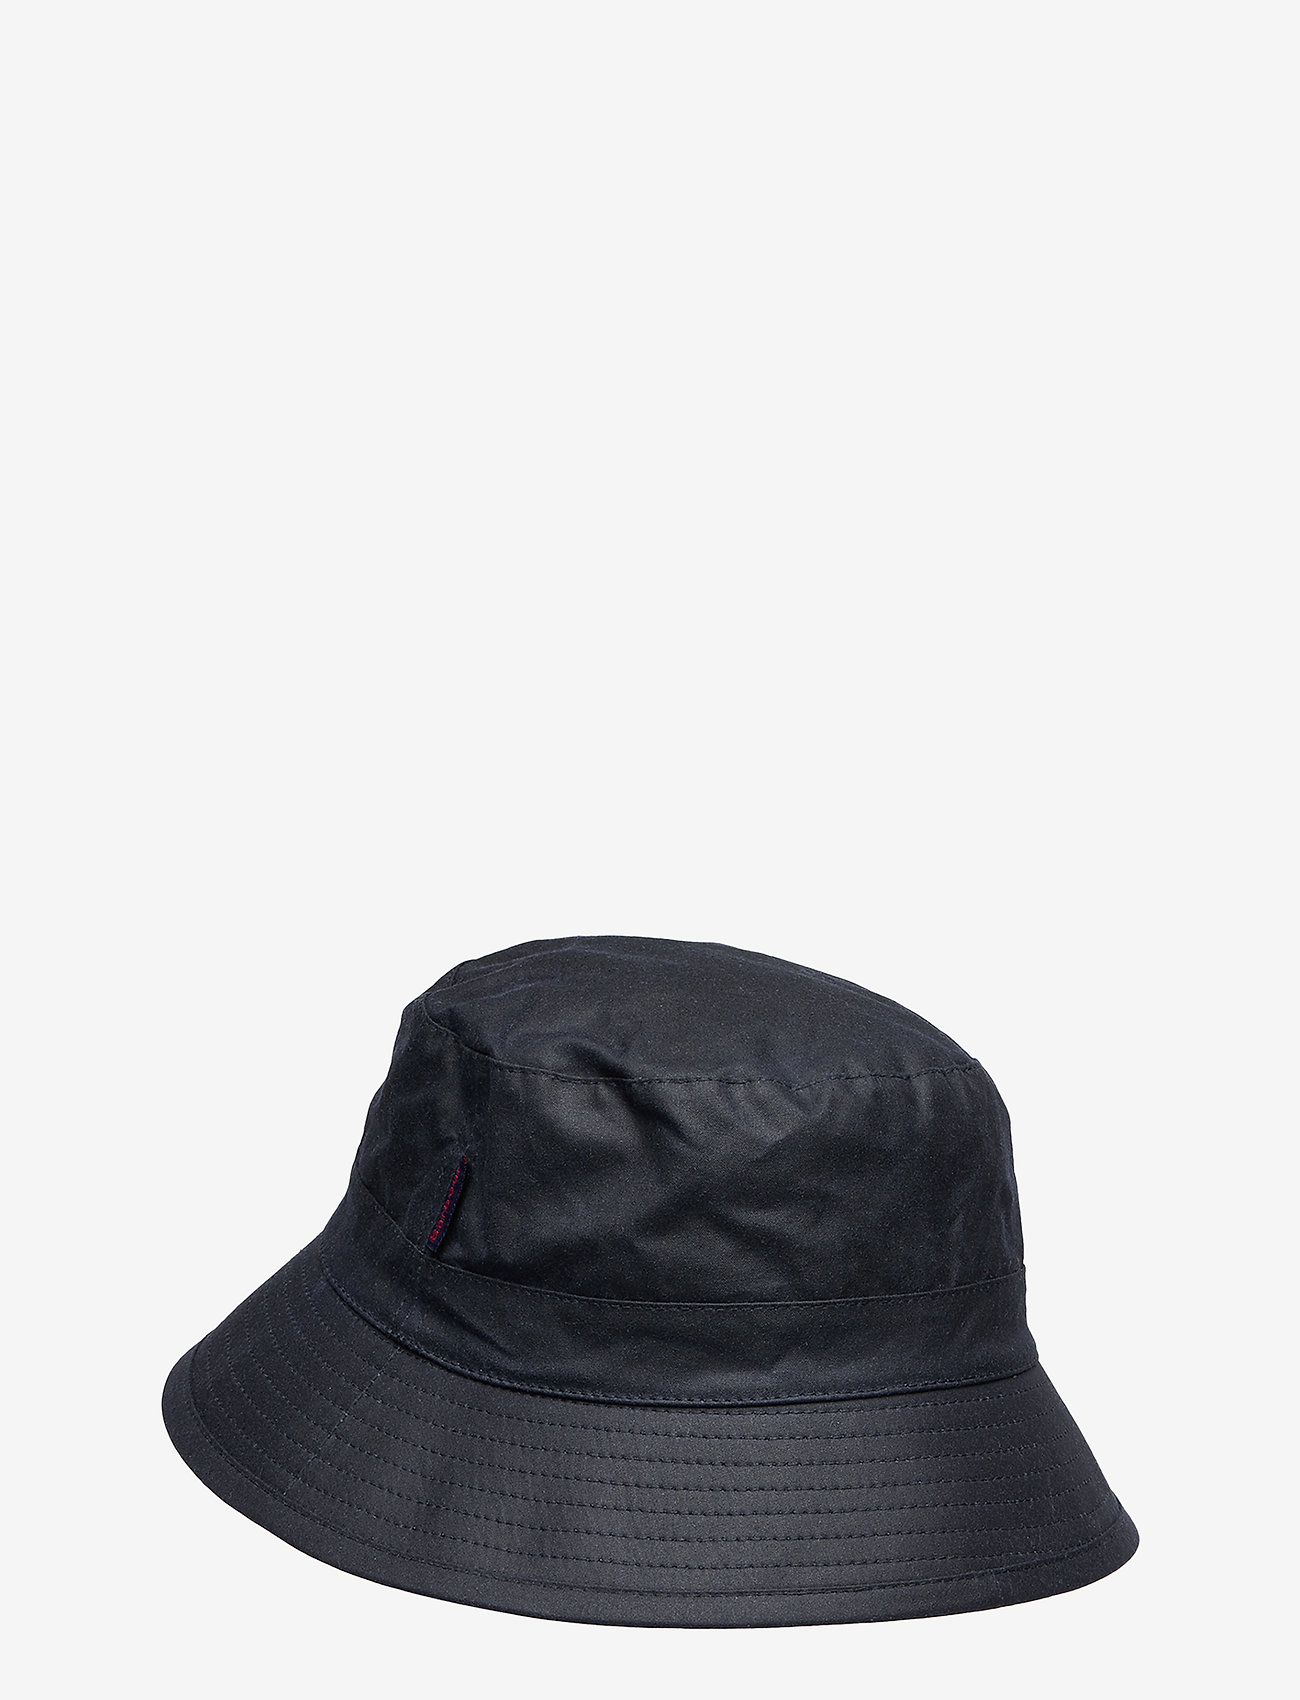 Barbour - Barbour Wax Bucket Hat - Äärisega mütsid - navy - 1